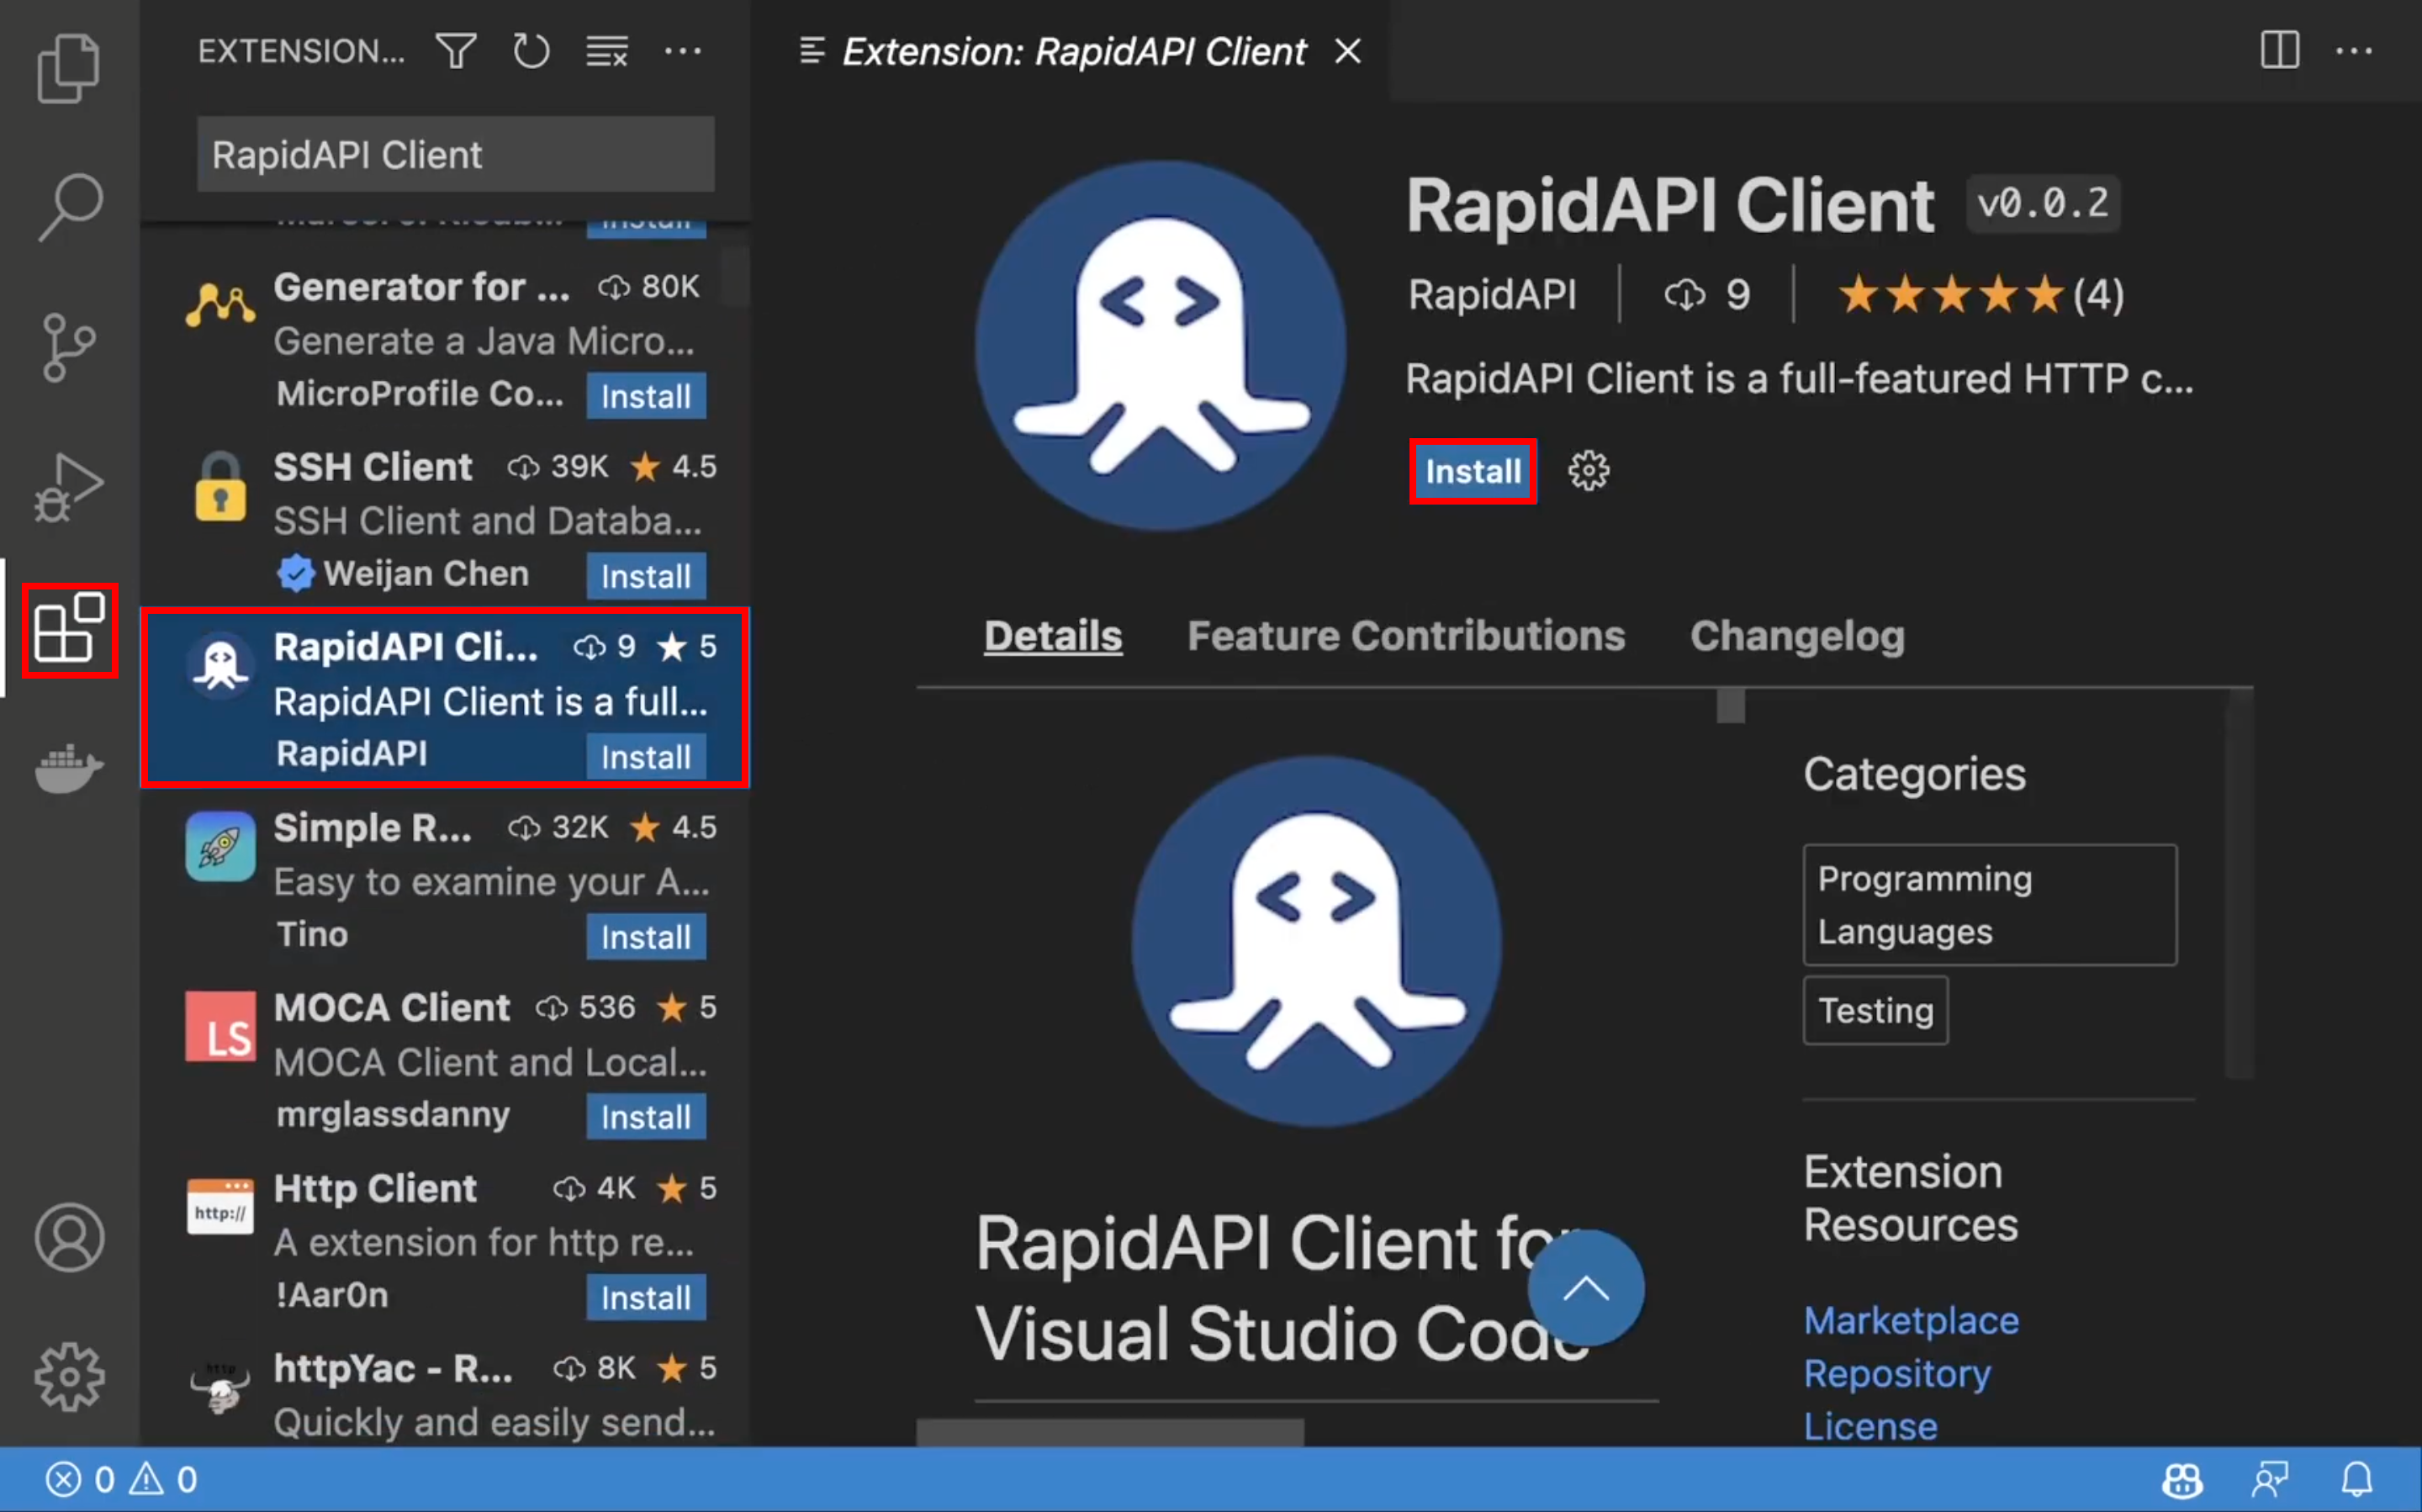 RapidAPI Client Extension